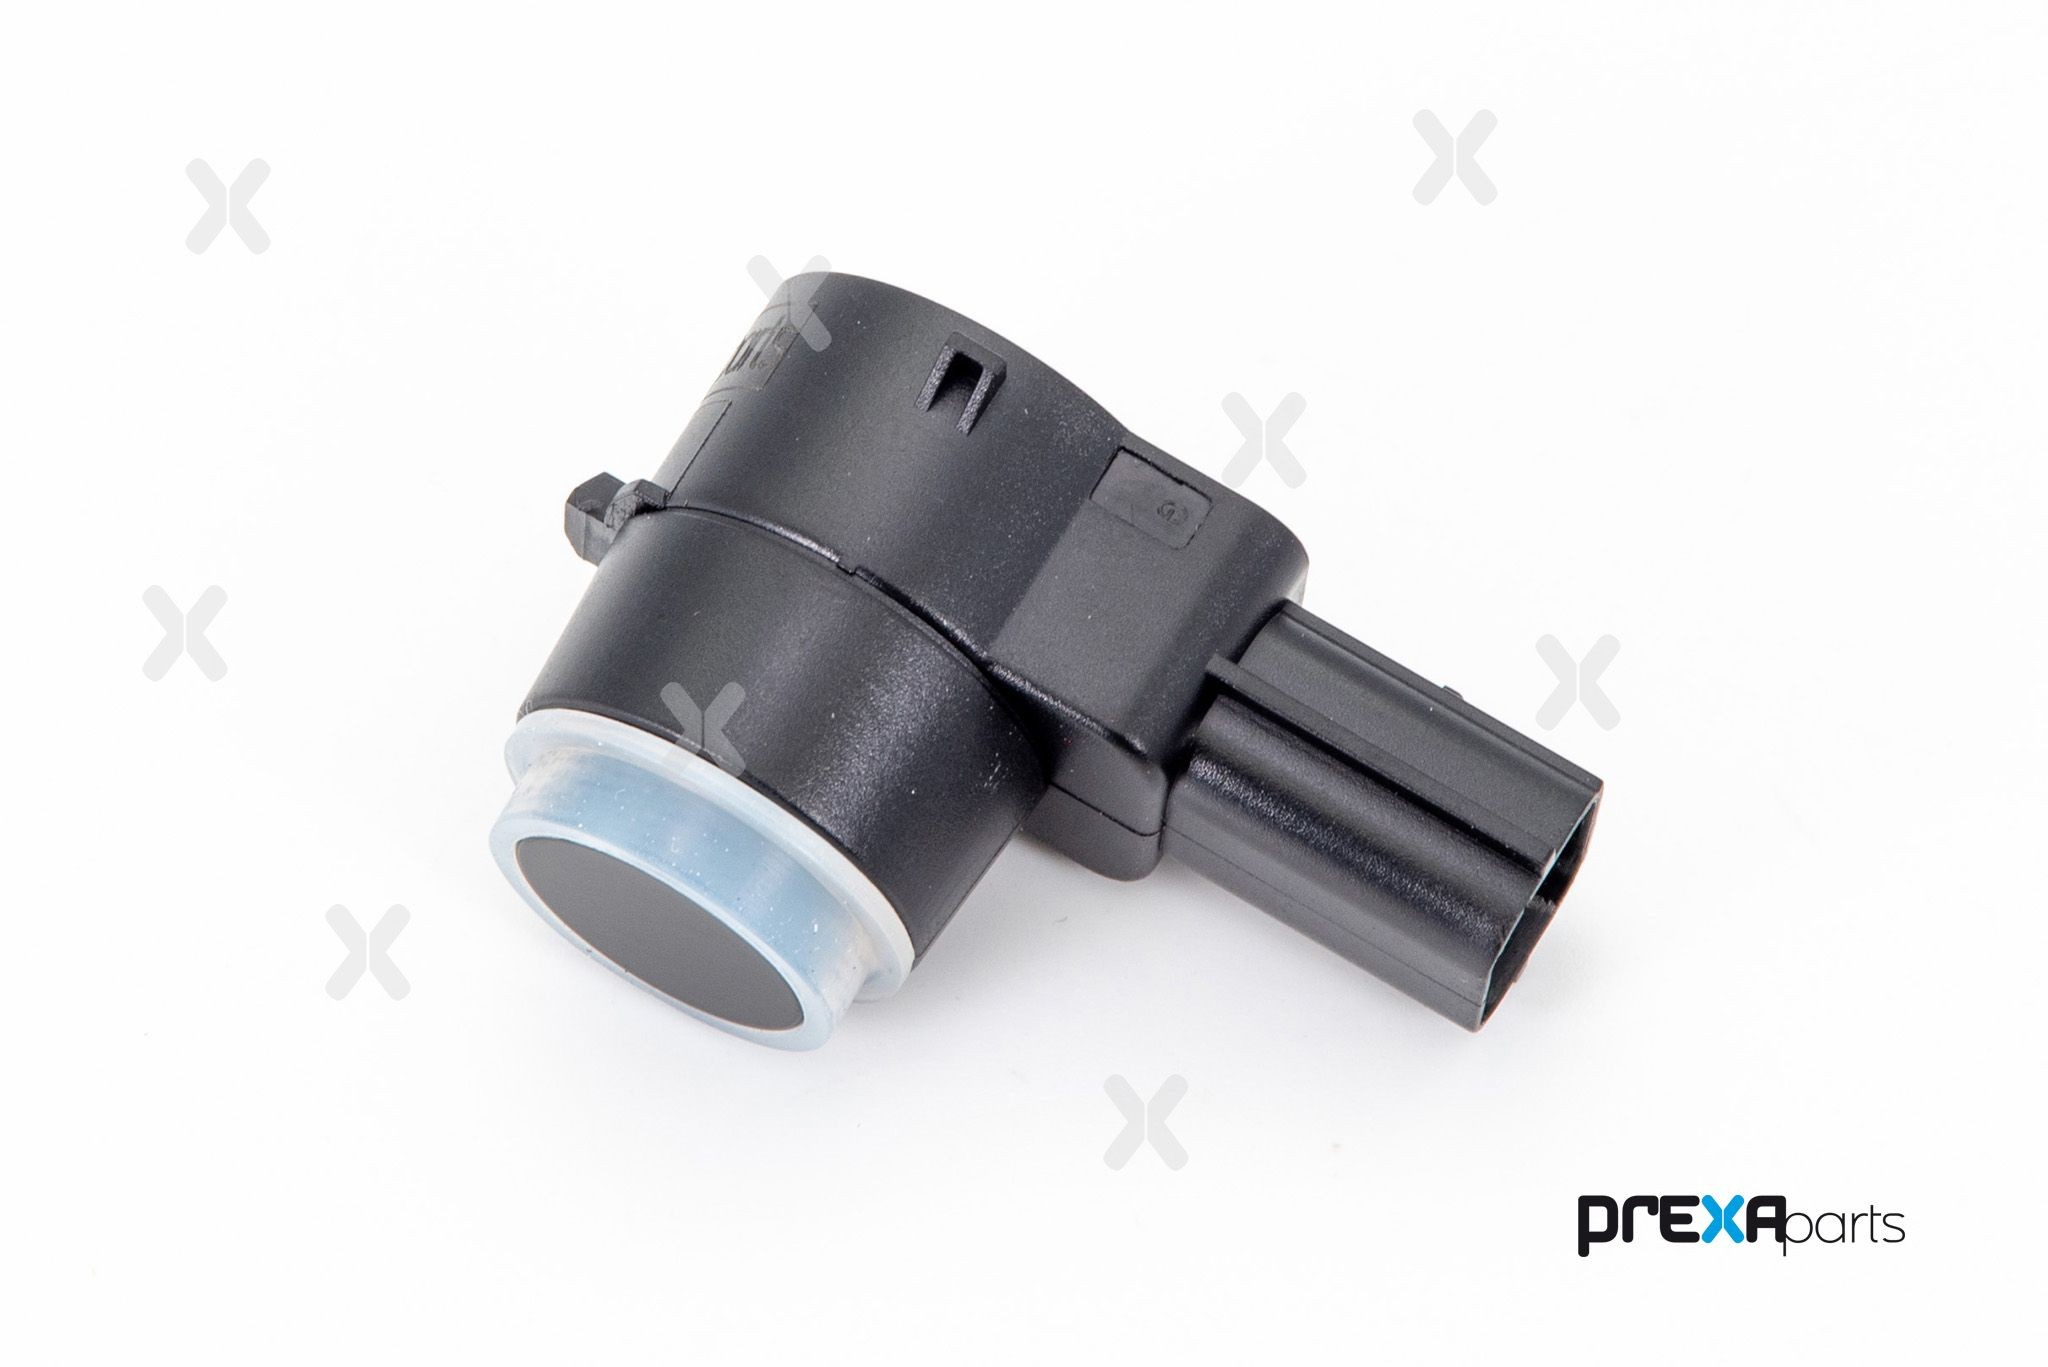 PREXAparts P403029 Parking sensor 39006749